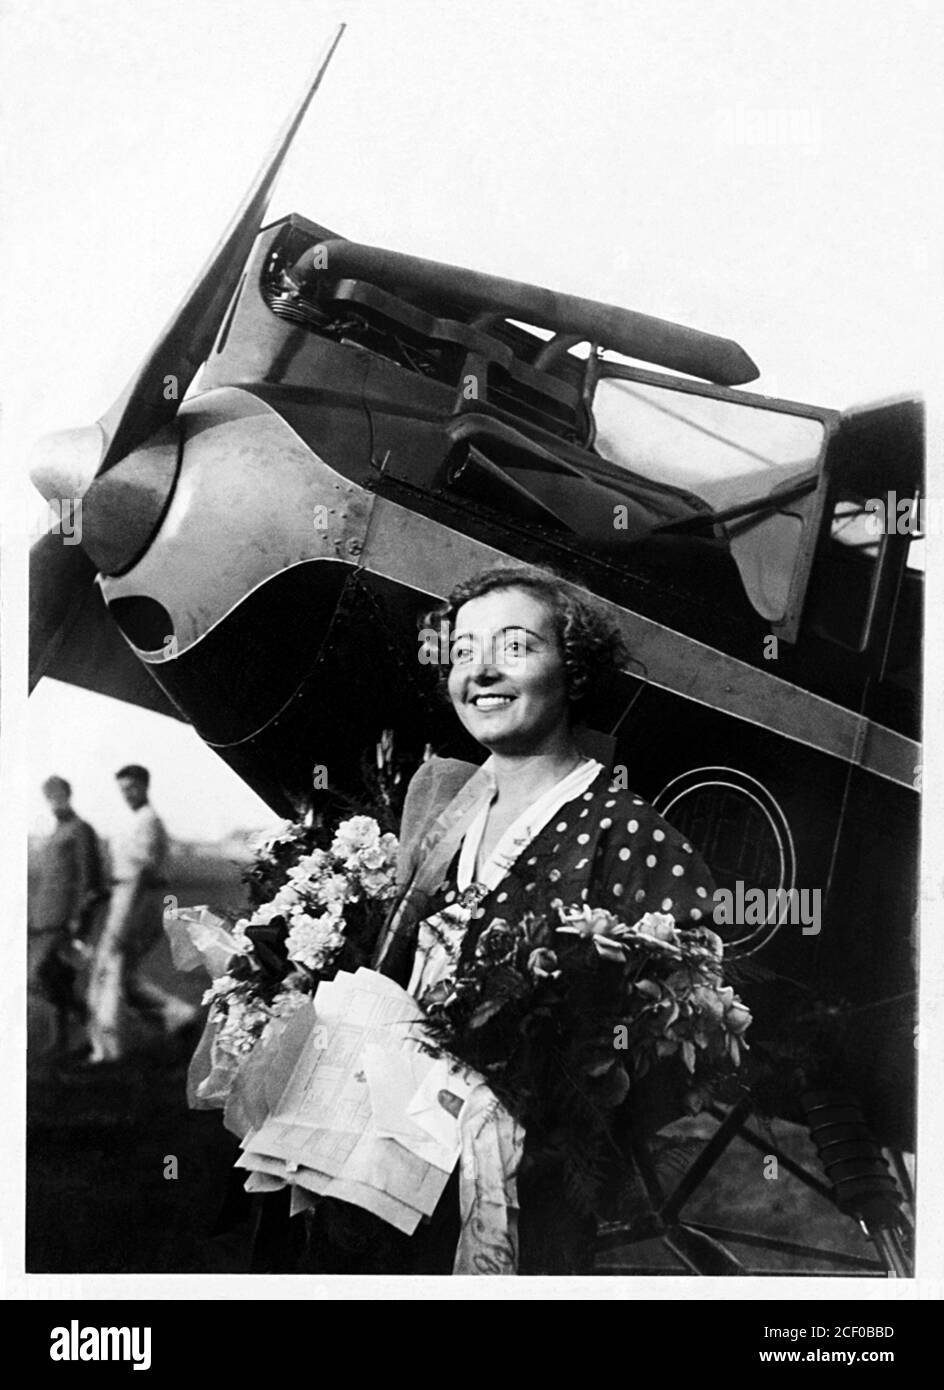 1932 , settembre , Milano , ITALIA : la donna italiana GABRIELLA Gaby ANGELINI ( 1911 - 1932 ) con il suo aereo Breda Ba. 15 . Ritratto di un fotografo sconosciuto . È stata la prima donna italiana a completare un volo transeuropeo, in viaggio in otto paesi europei, per i quali ha ricevuto una Medaglia d'Aquila d'Oro. Nel 1932 lasciò l'Italia su un volo da sola per Delhi, India . Angelini incontrò difficoltà durante una tempesta di sabbia in Libia , durante il RAID Asiatico Milano-Delhi , e si schiantò nel deserto e morì. - PIONIERE DELL' ARIA - PIONIERI DEL VOLO - FLY - PIONIERS - AVIATRICE - AVI Foto Stock